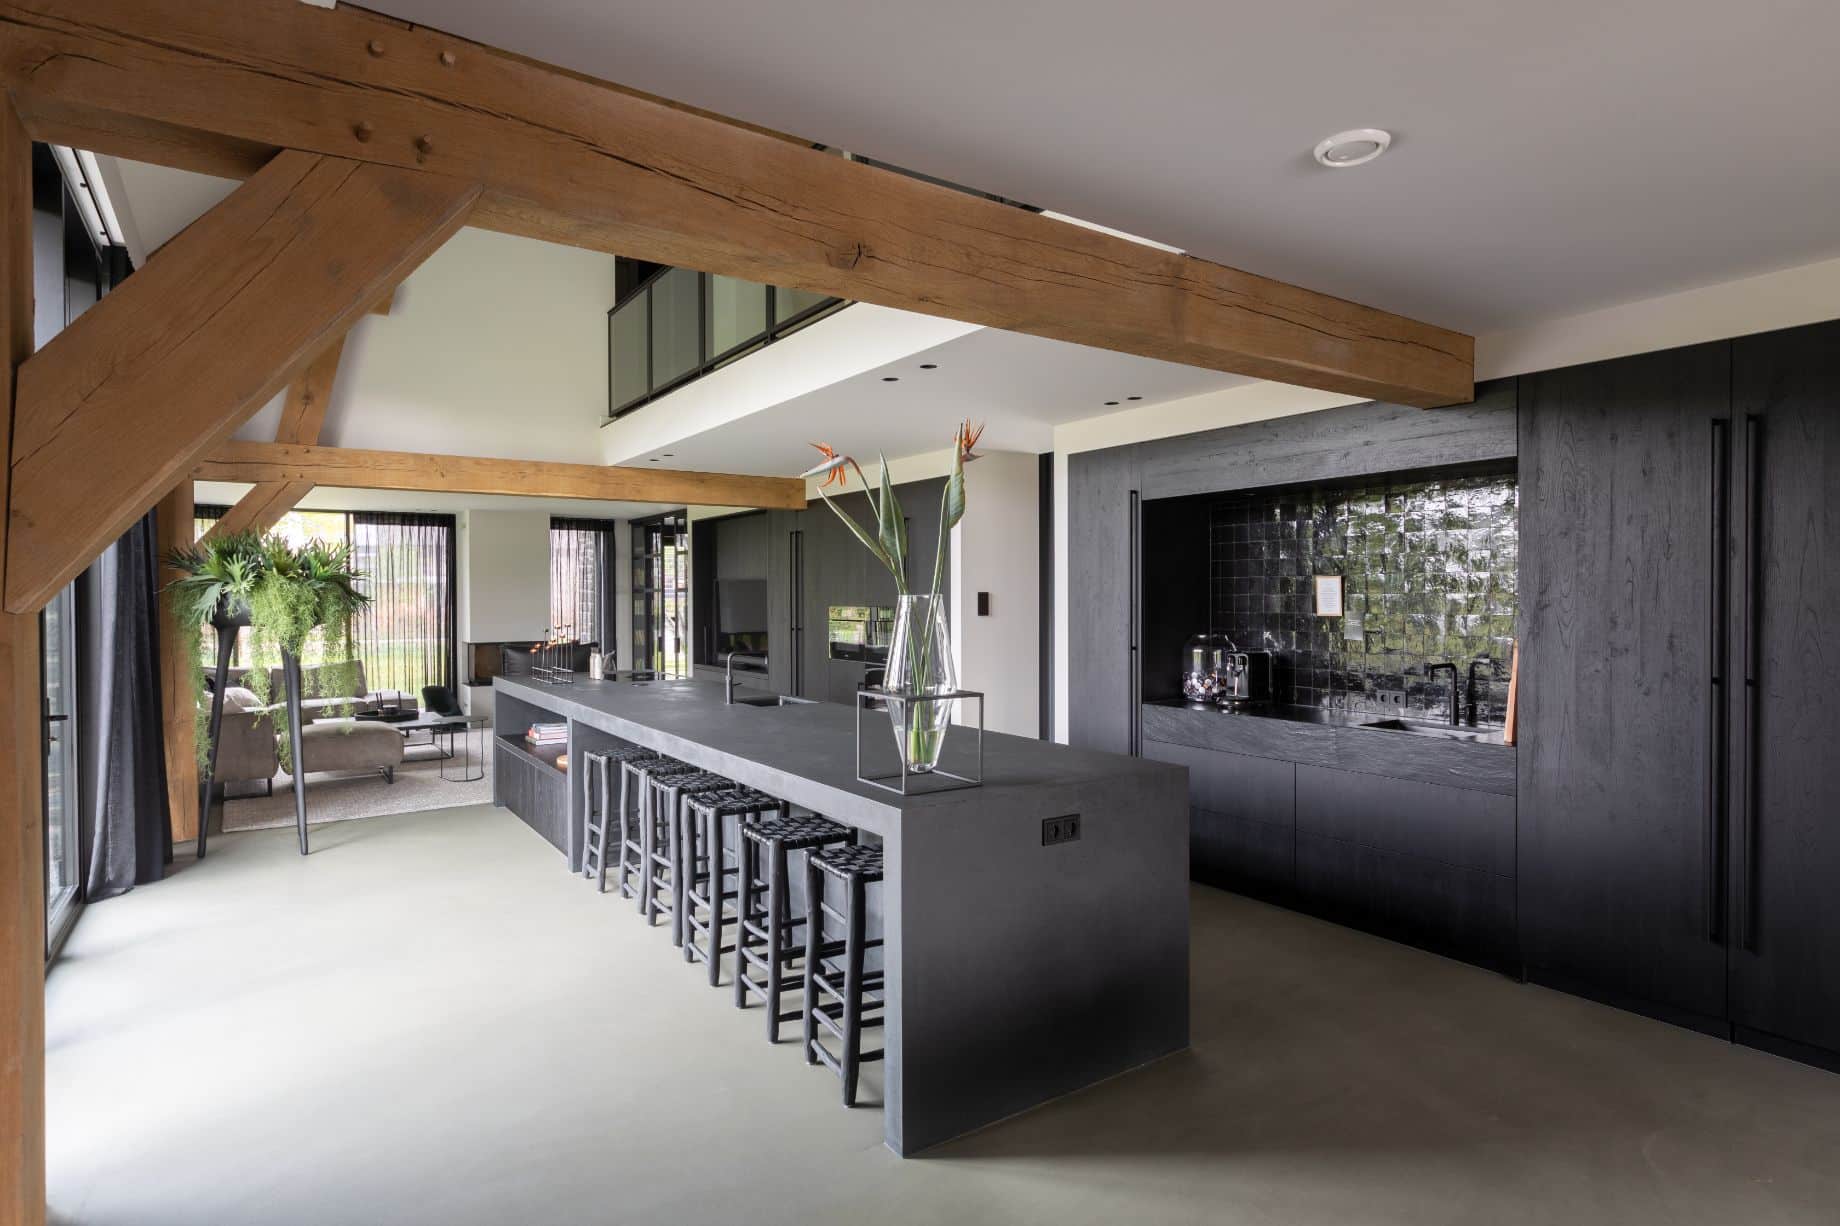 zwarte houten keuken van ginkel keukens 14